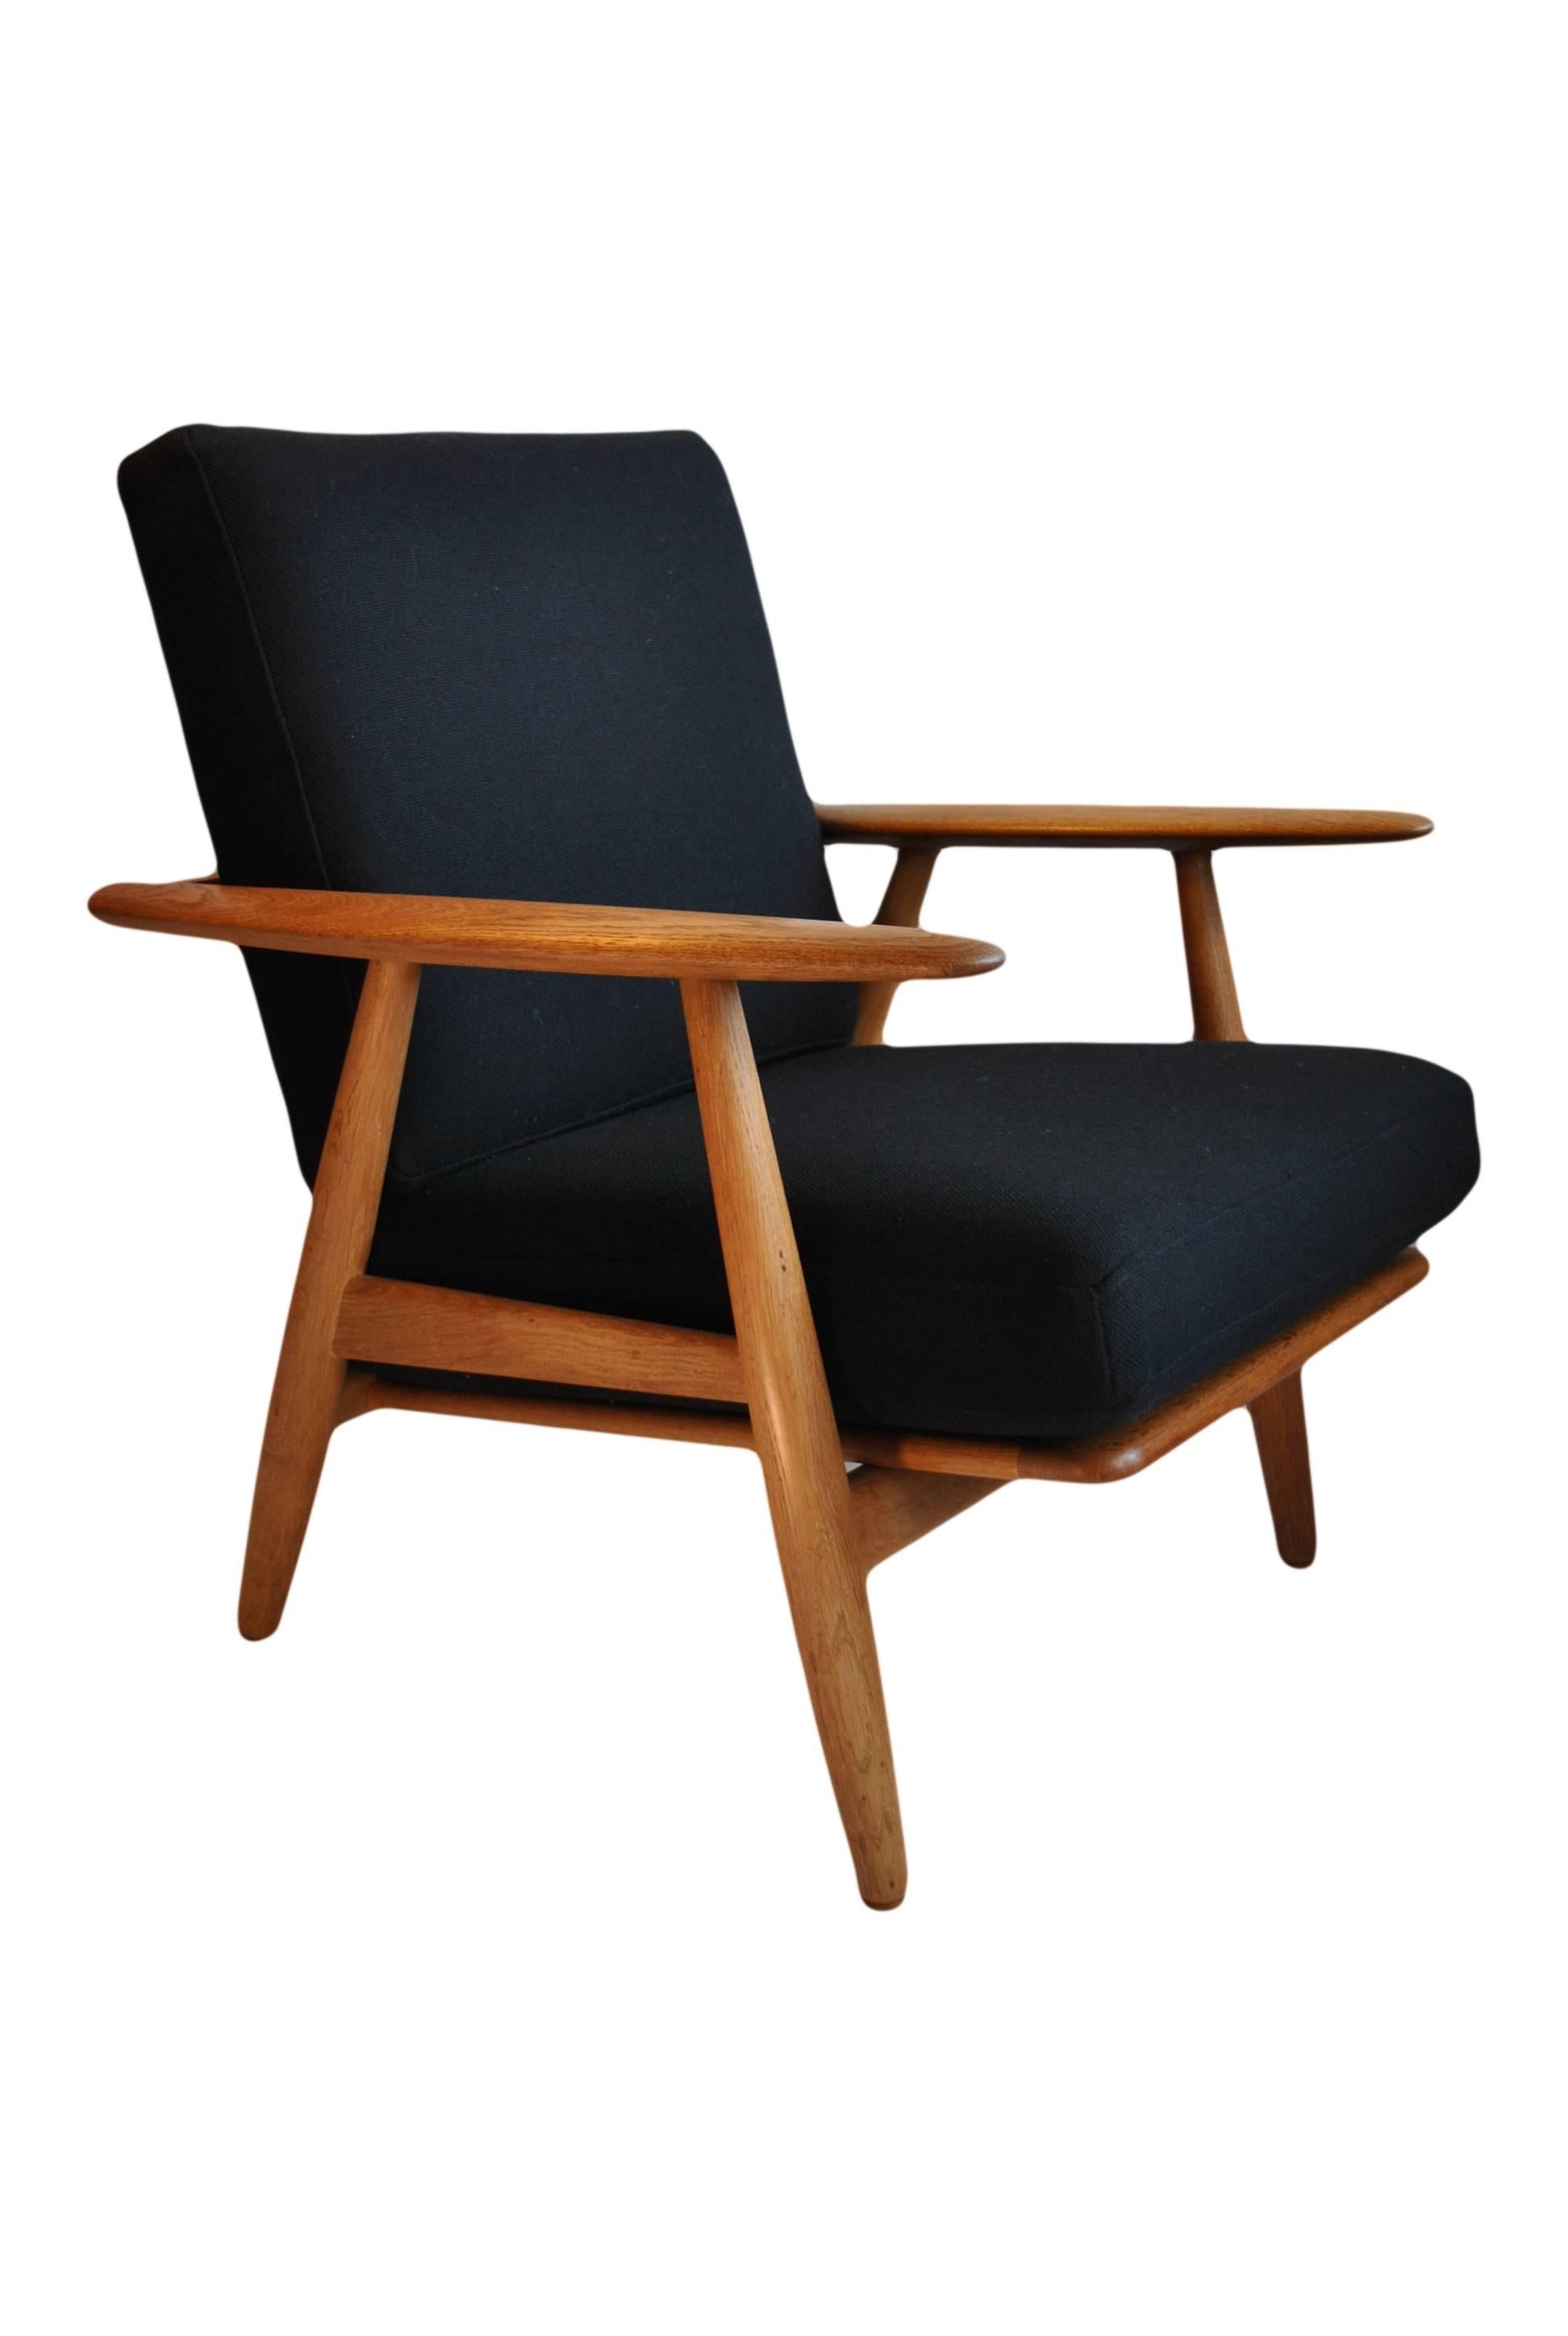 20th Century Original Hans J Wegner 'Cigar' Chair, Oak Model